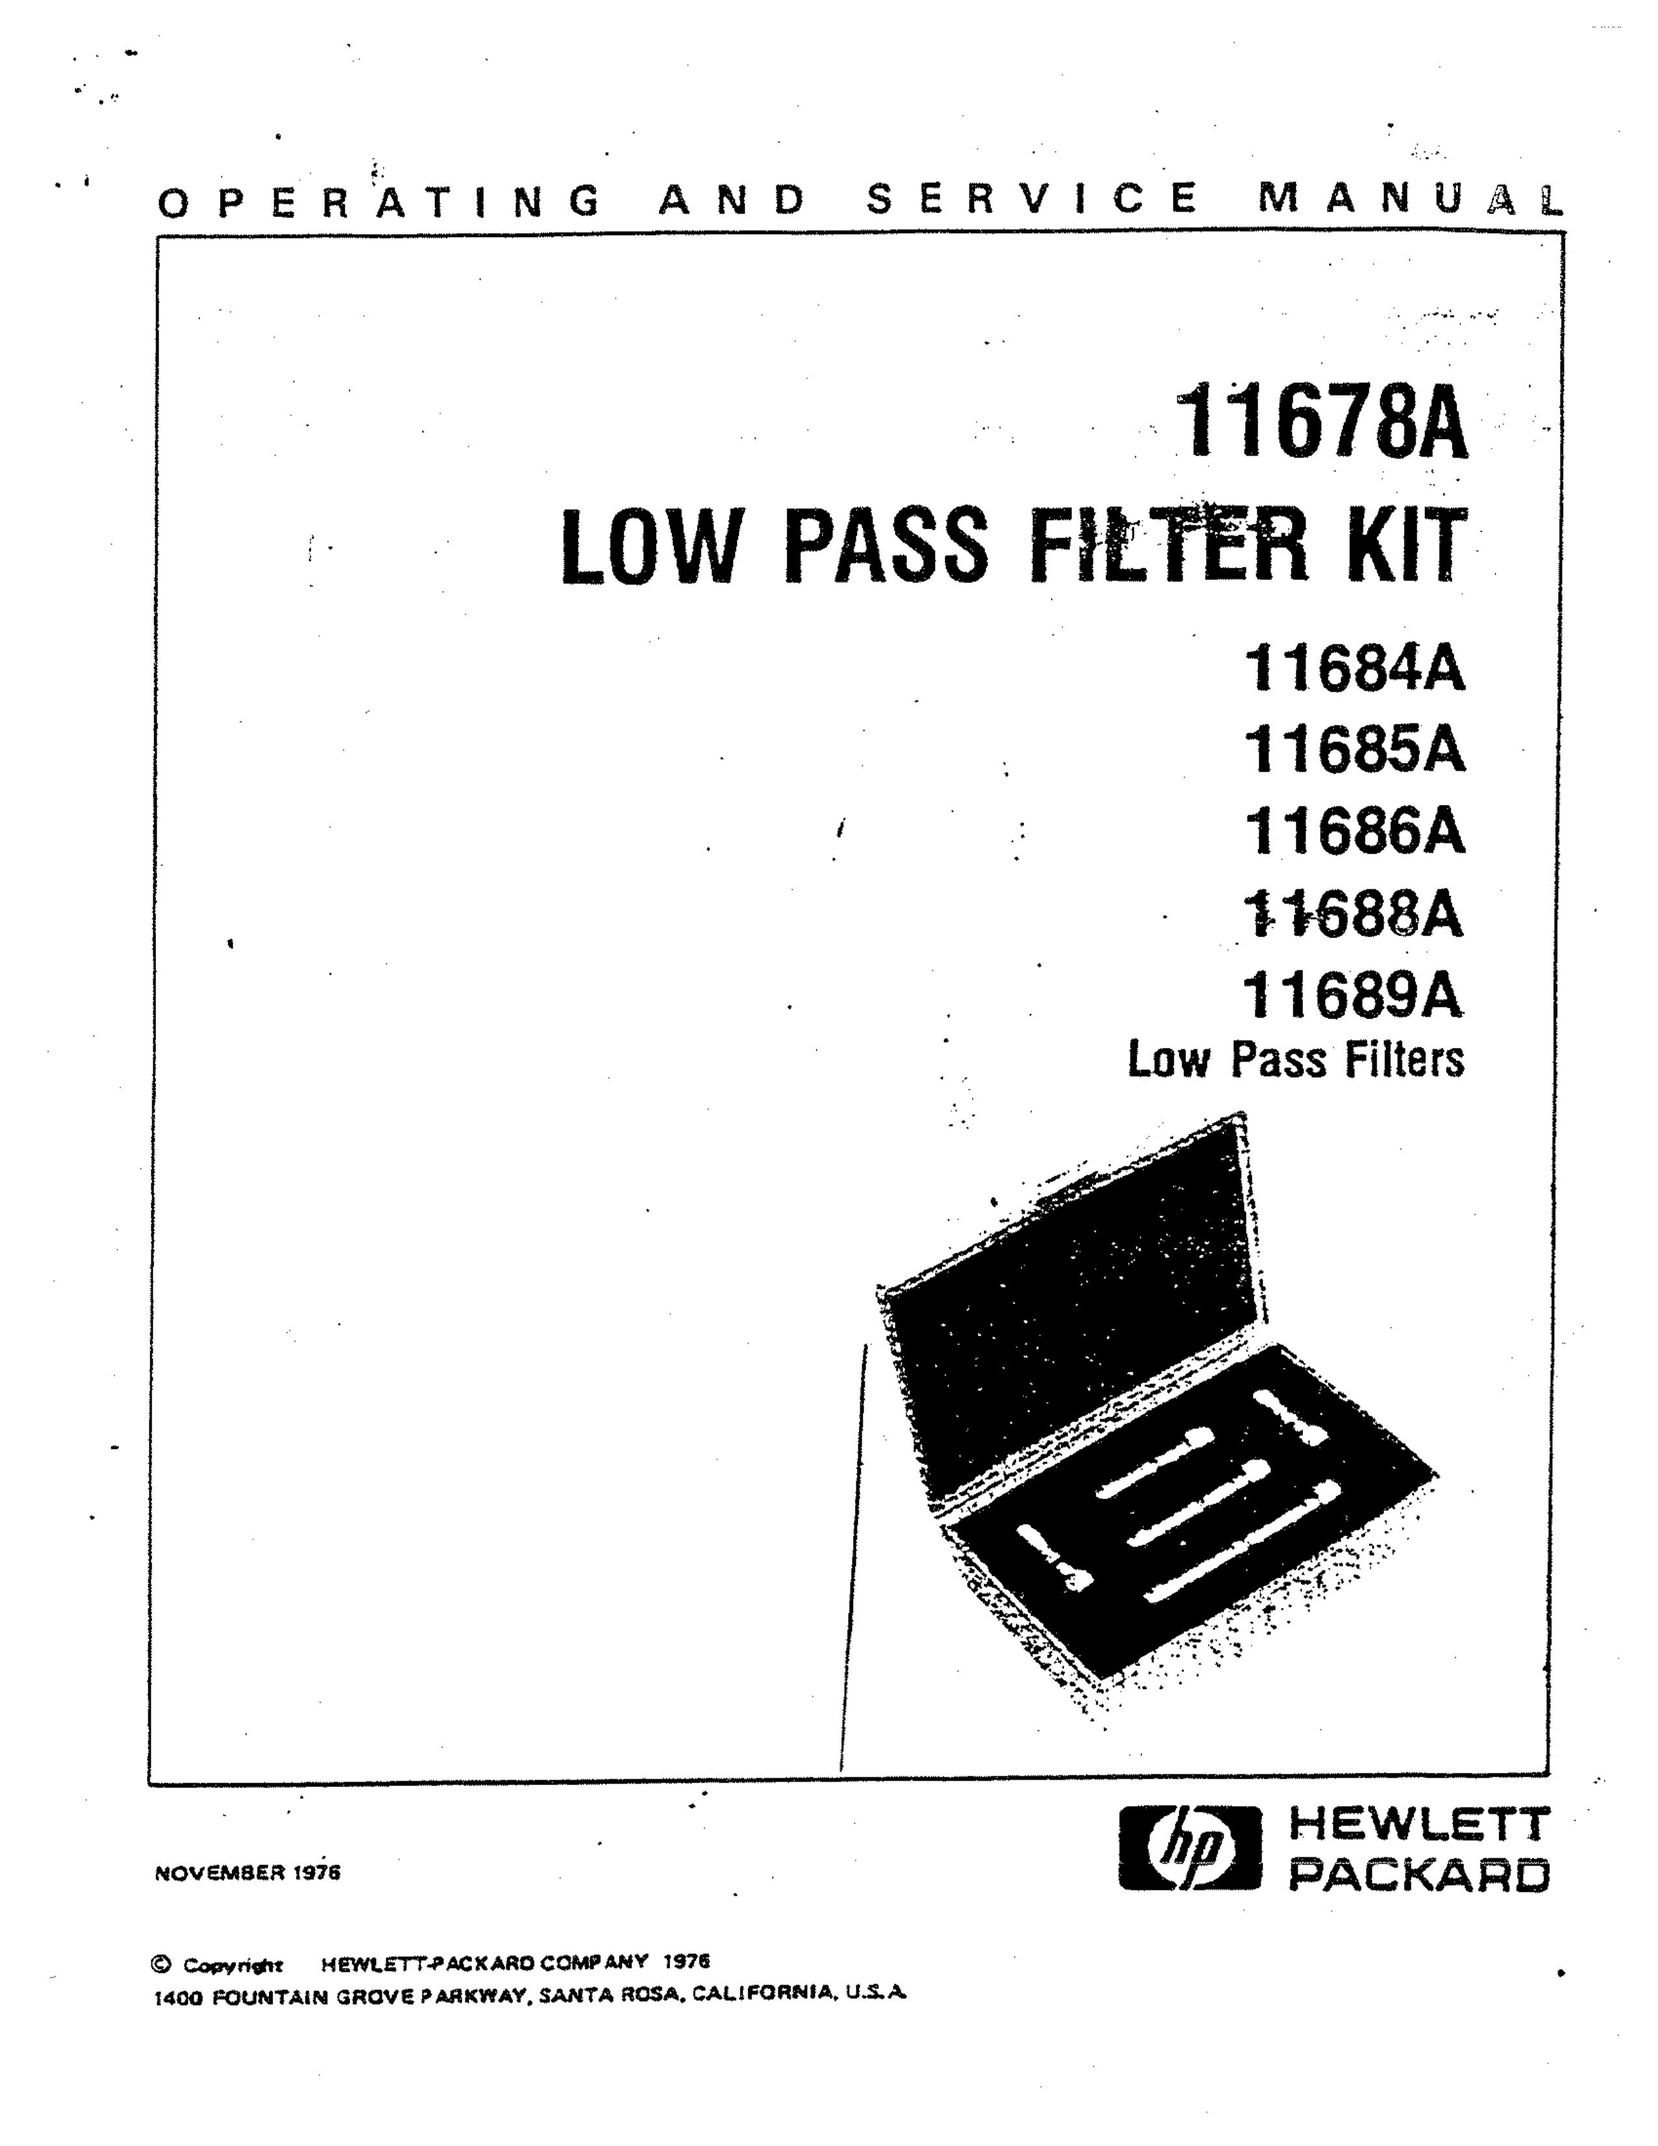 HP (Hewlett-Packard) 11686A Computer Accessories User Manual